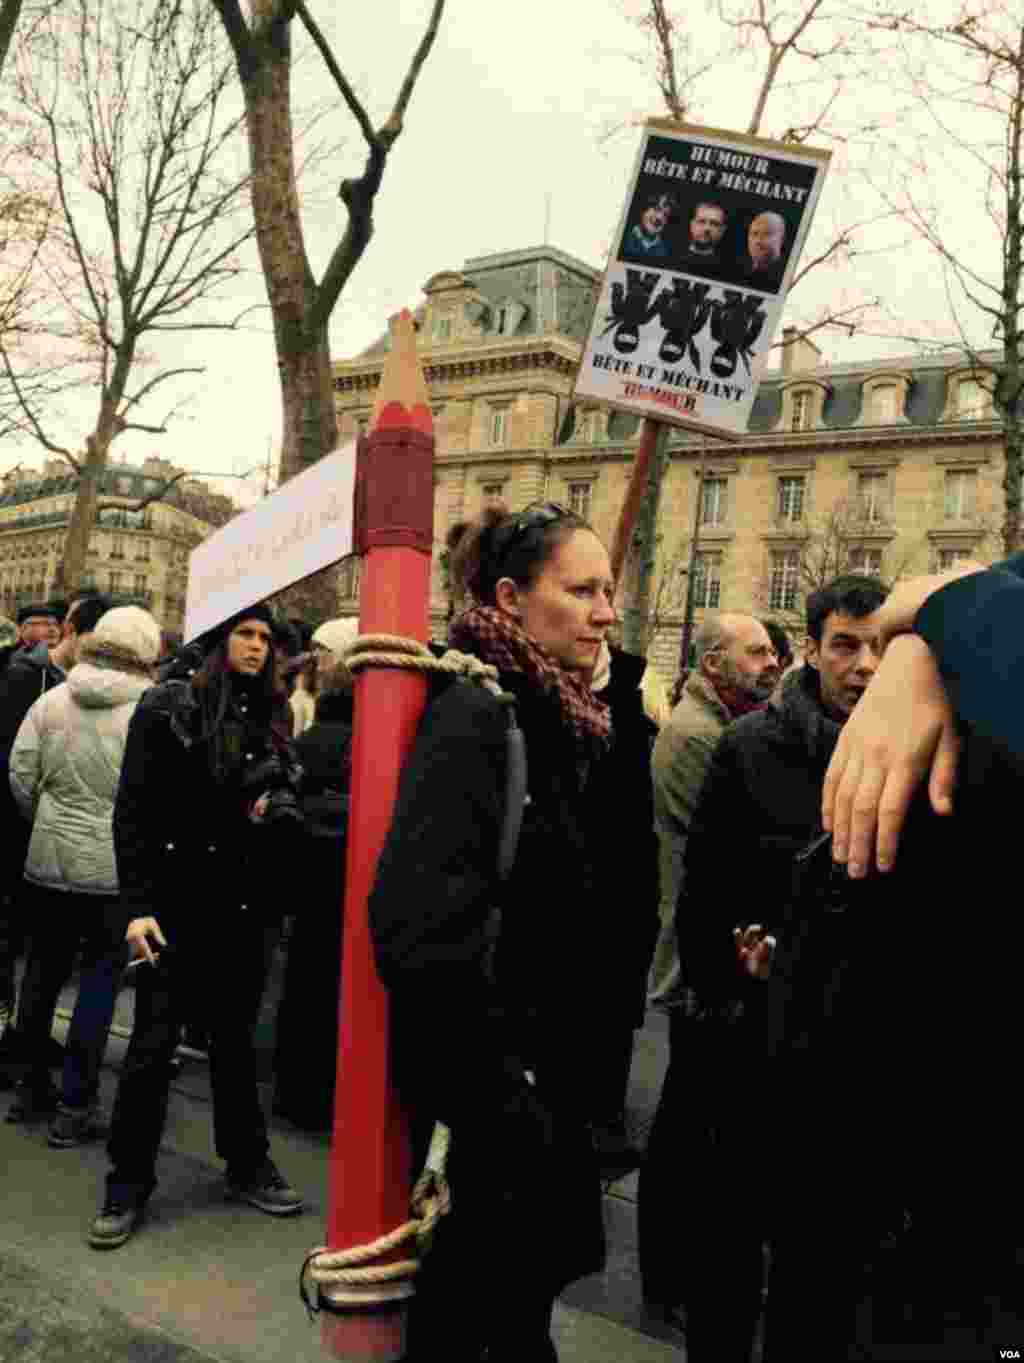 تظاهرکننده ای با بدوش کشيدن يک مداد بزرگ به کشتار نويسندگان و روزنامه نگاران اعتراض میکند ​-- ۲۱ دی ۱۳۹۳ (۱۱ ژانويه ۲۰۱۵)&nbsp;​عکس از محمد حسن مقصودلو، خبرنگار/عکاس بخش فارسی صدای آمريکا در پاريس